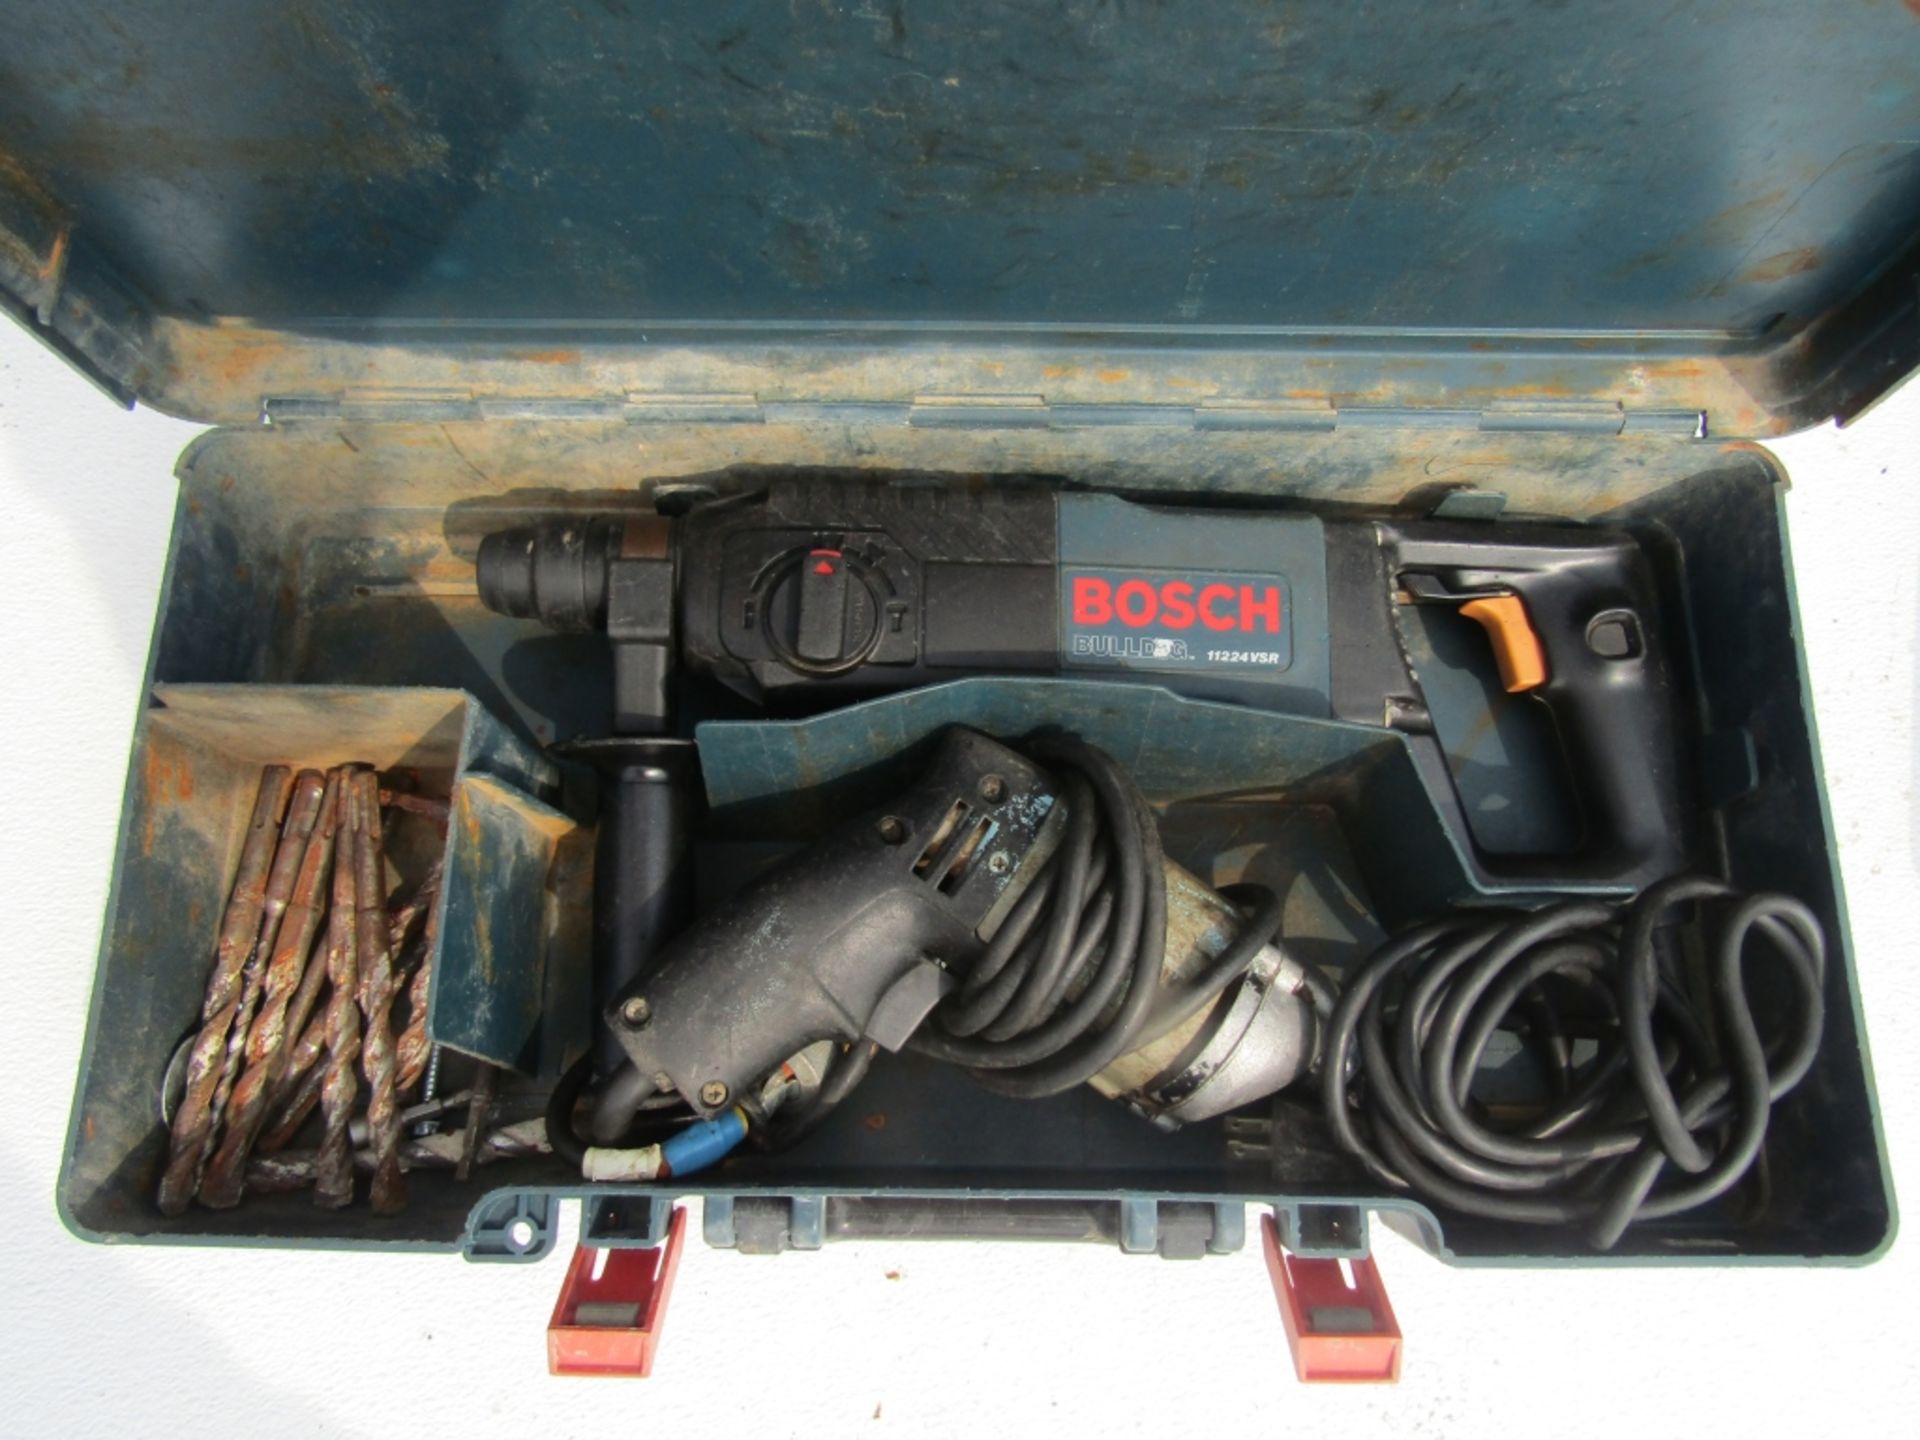 Bosch Bulldog 11224VSR Root-Hammer Drill, Model 224, Serial #490000223,